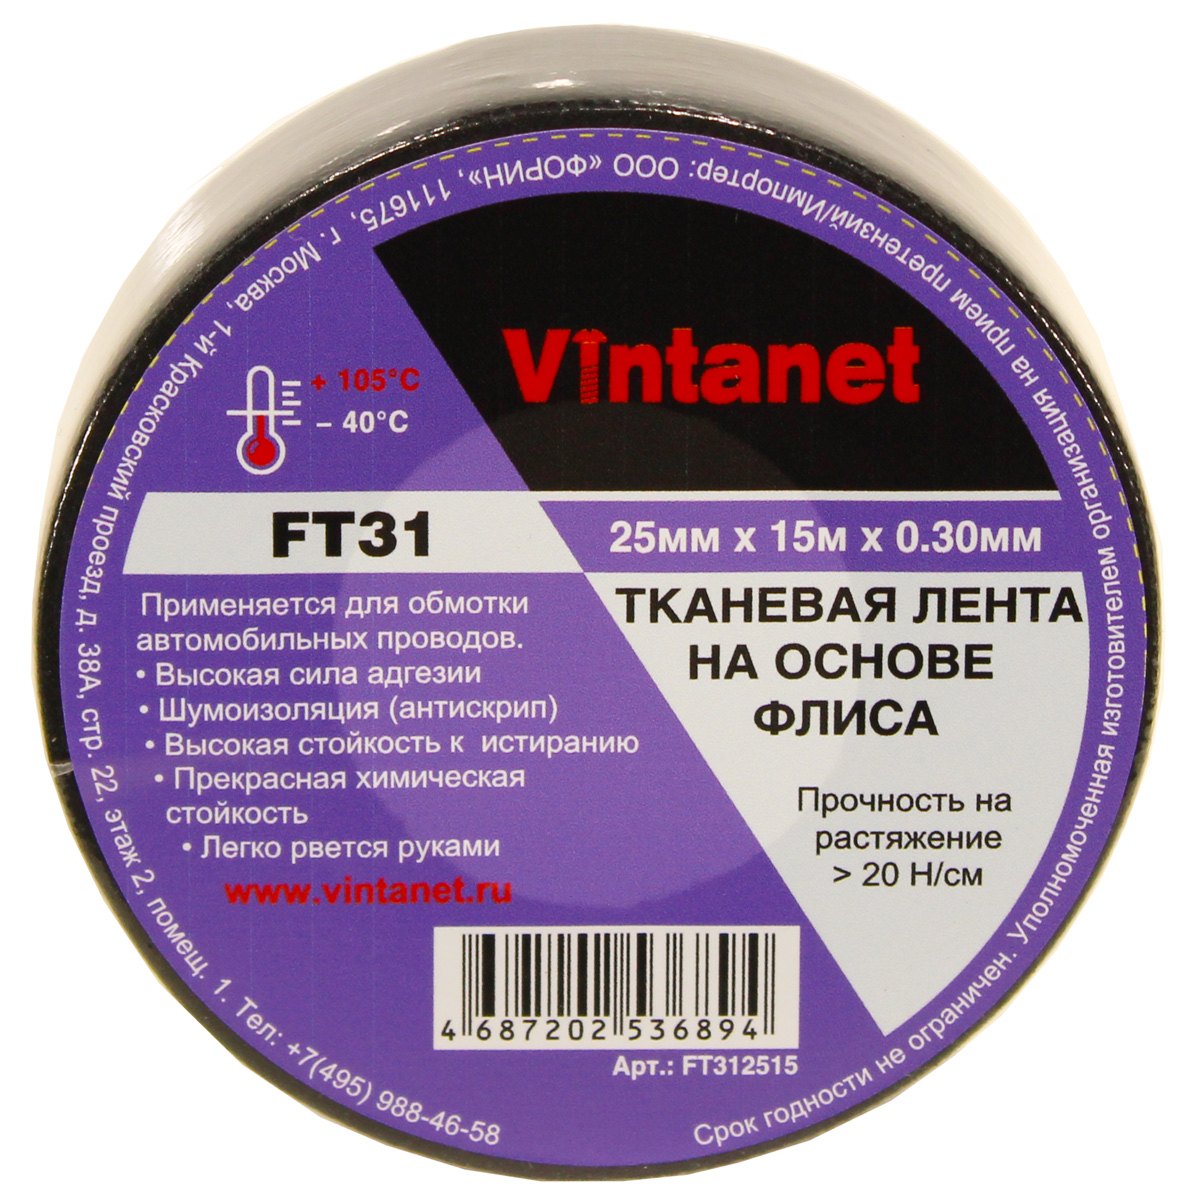 Тканевая лента на основе флиса Vintanet FT31, 25мм х 15м, FT312515